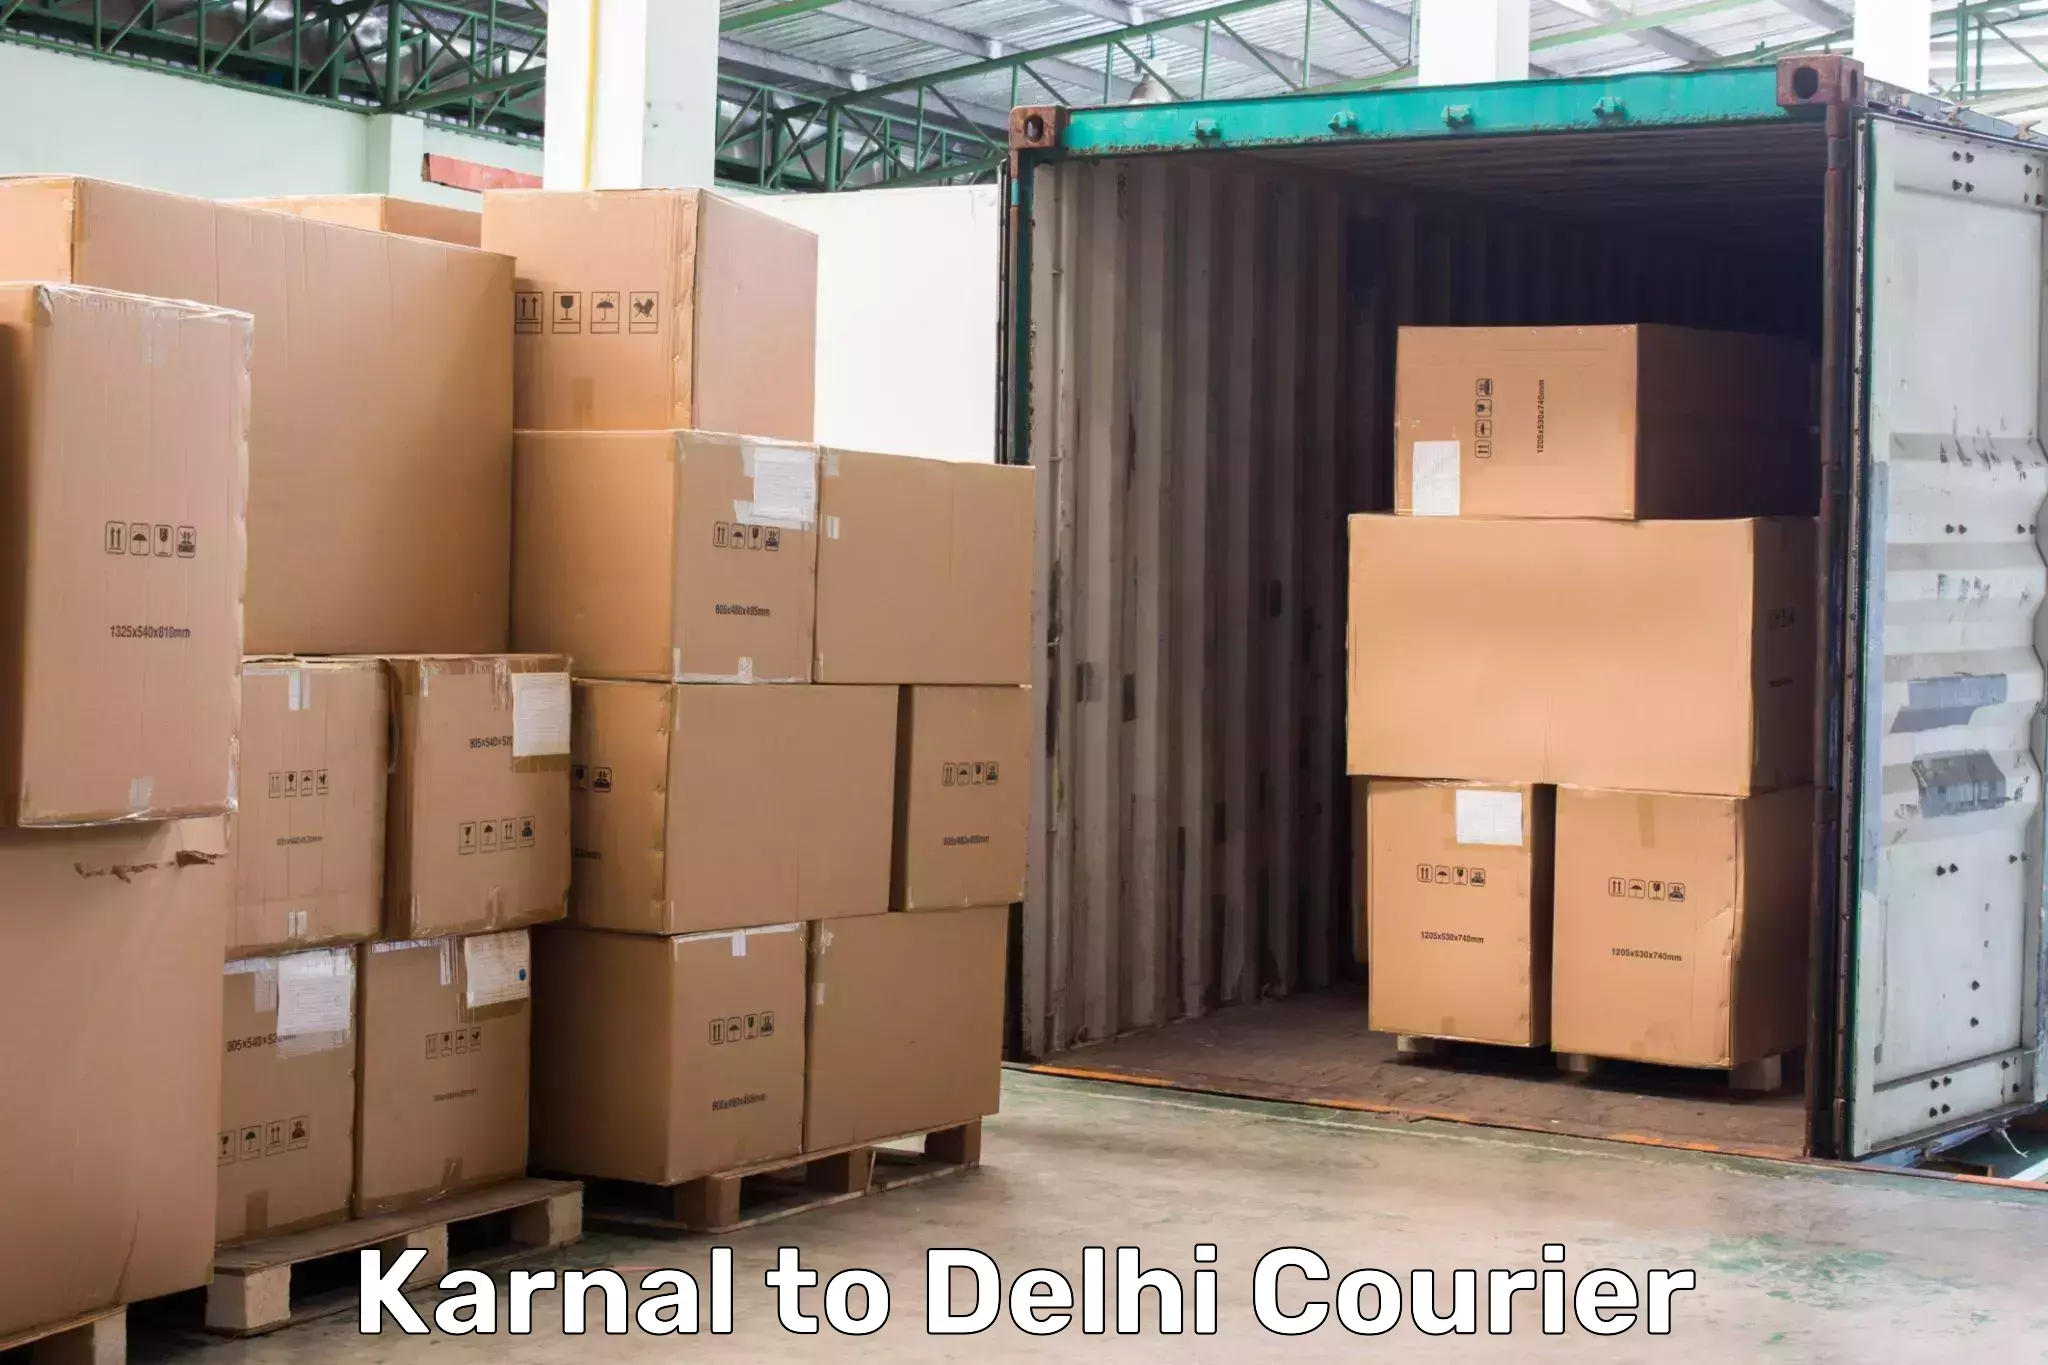 Express logistics service Karnal to Subhash Nagar